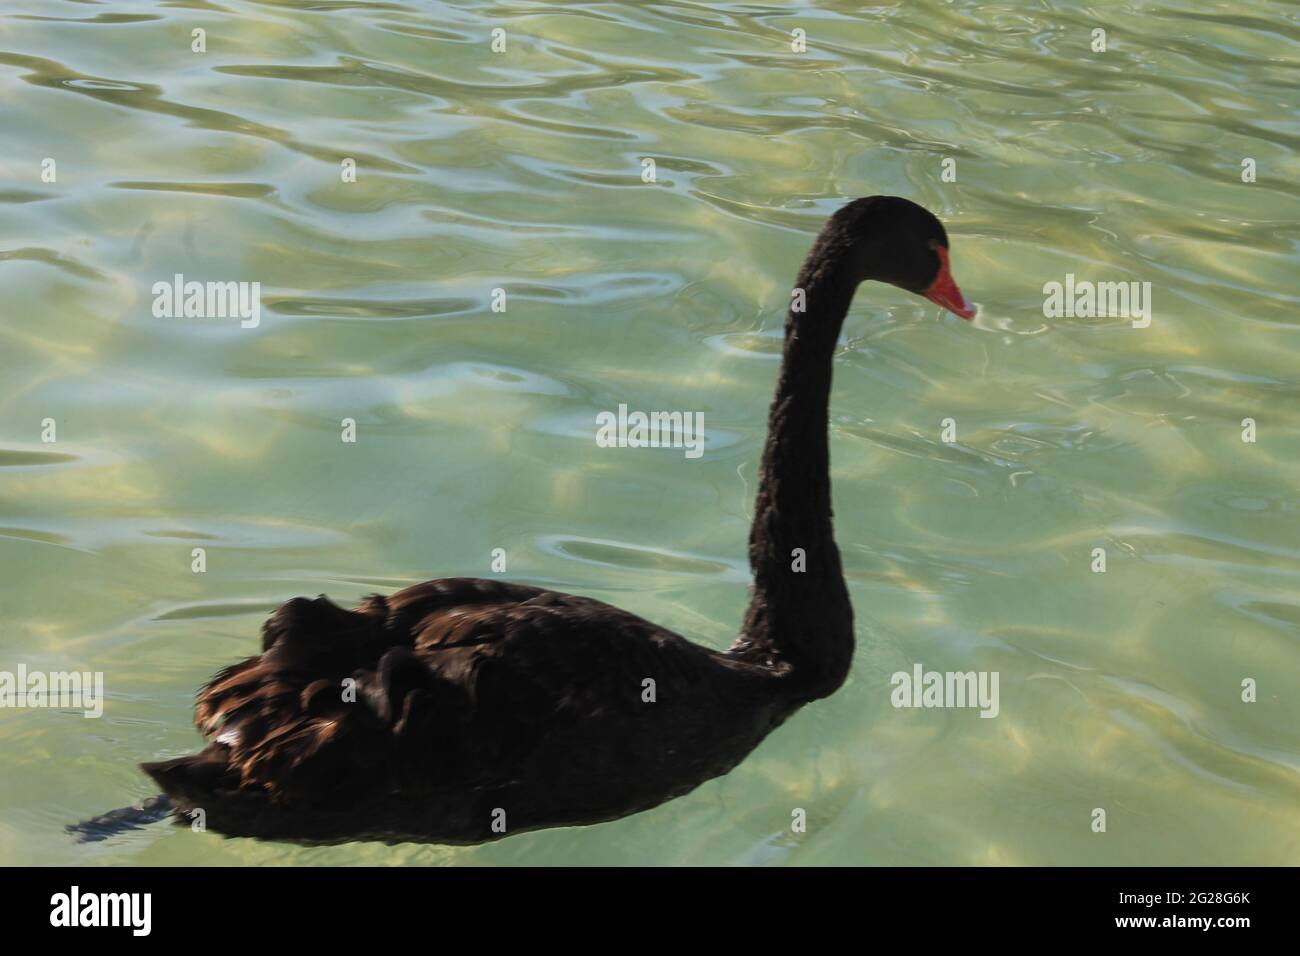 portraits de cygnes noirs muets nageant dans la piscine Banque D'Images